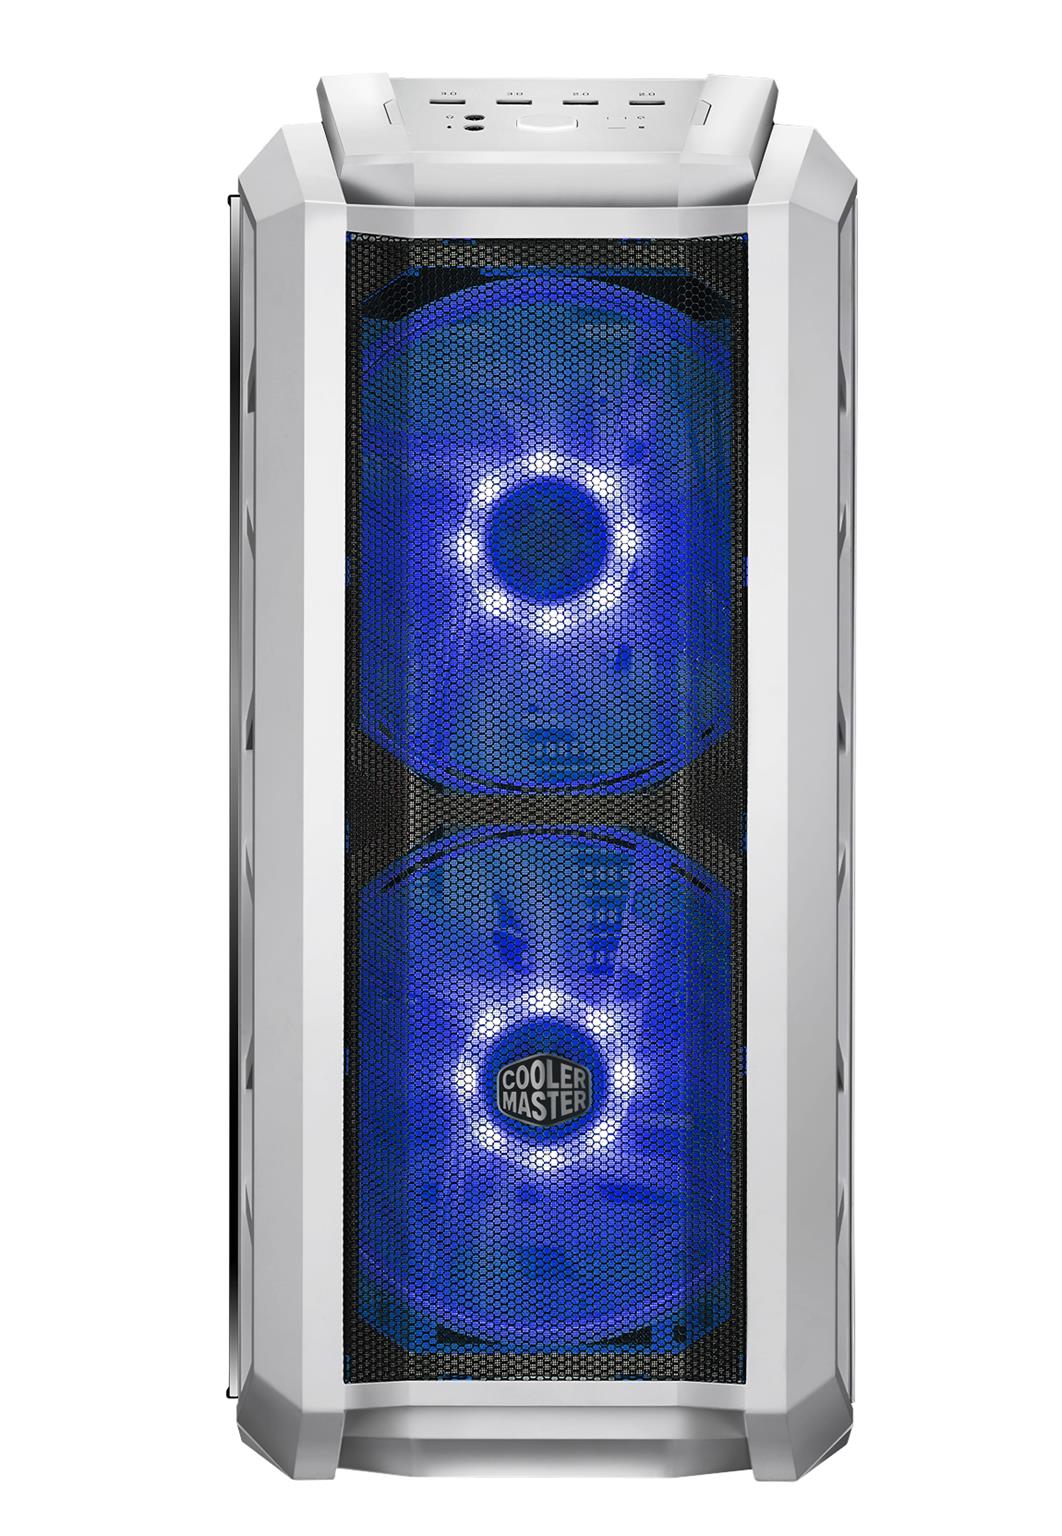 H500P MESH WHITE front light Blue